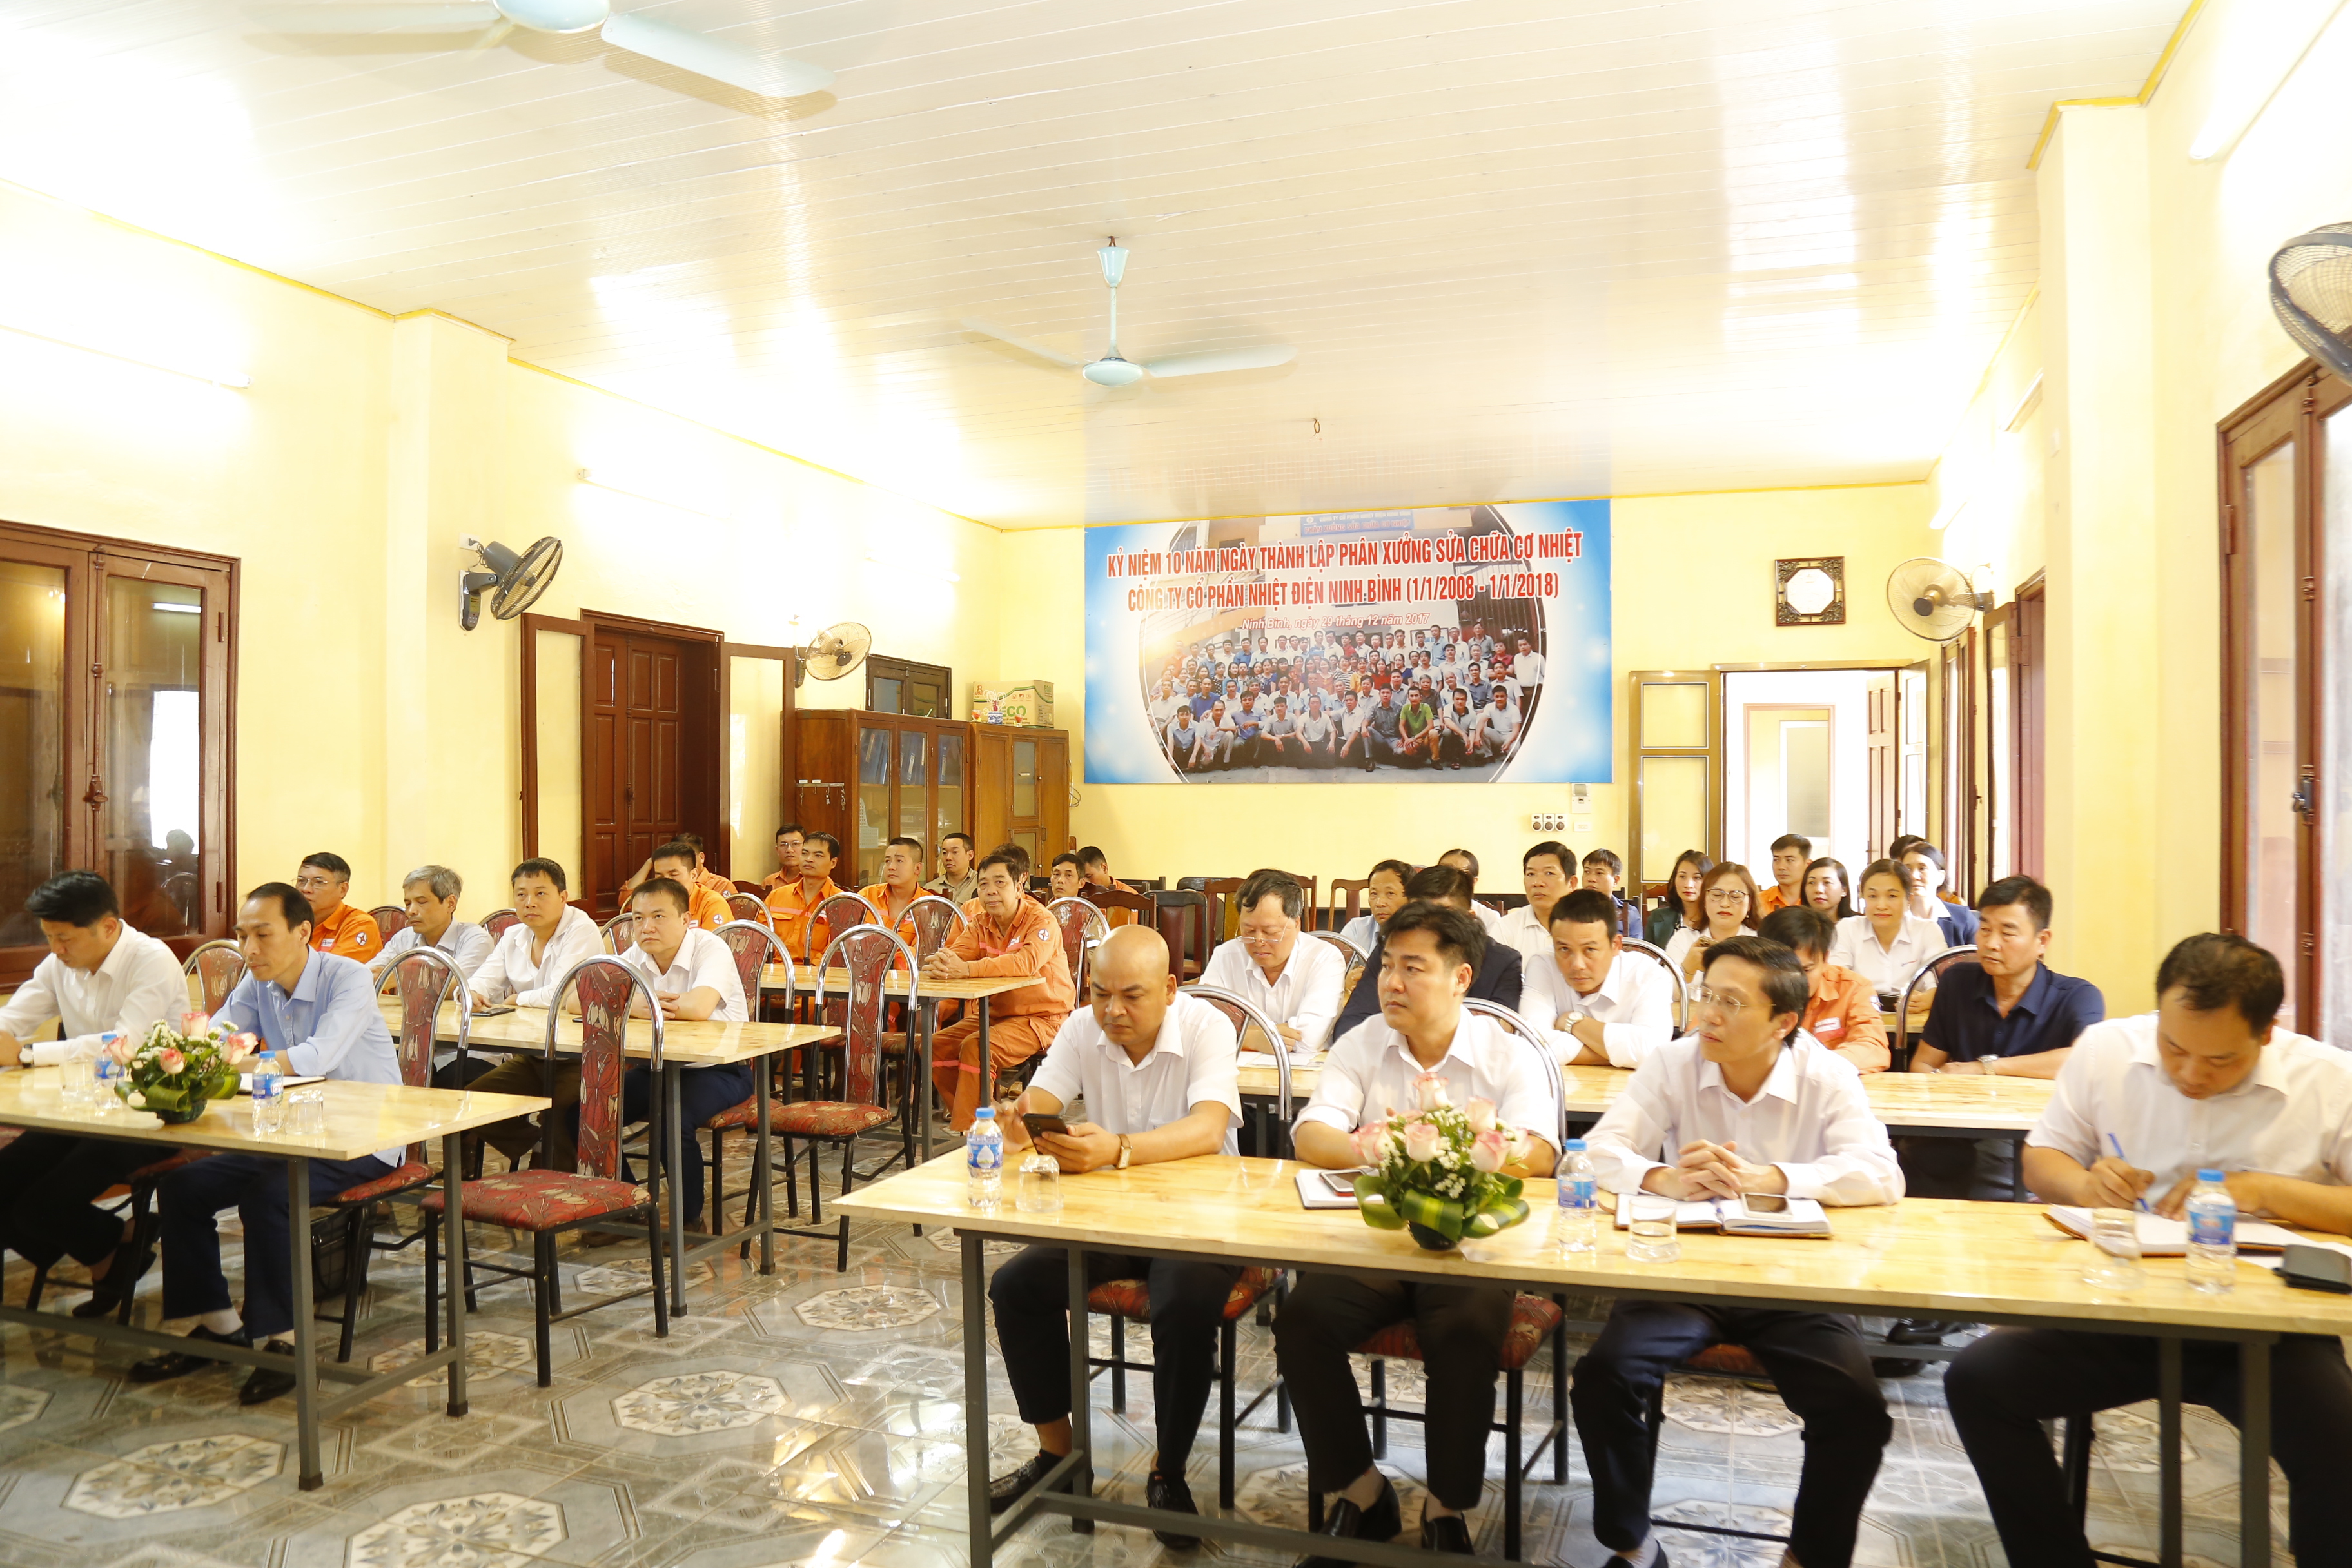 Chi bộ Sửa chữa cơ nhiệt thuộc Đảng bộ Công ty cổ phần Nhiệt điện Ninh Bình tổ chức Hội nghị sinh hoạt chuyên đề về Chủ đề công tác năm 2023 của Ban Chấp hành Đảng bộ tỉnh